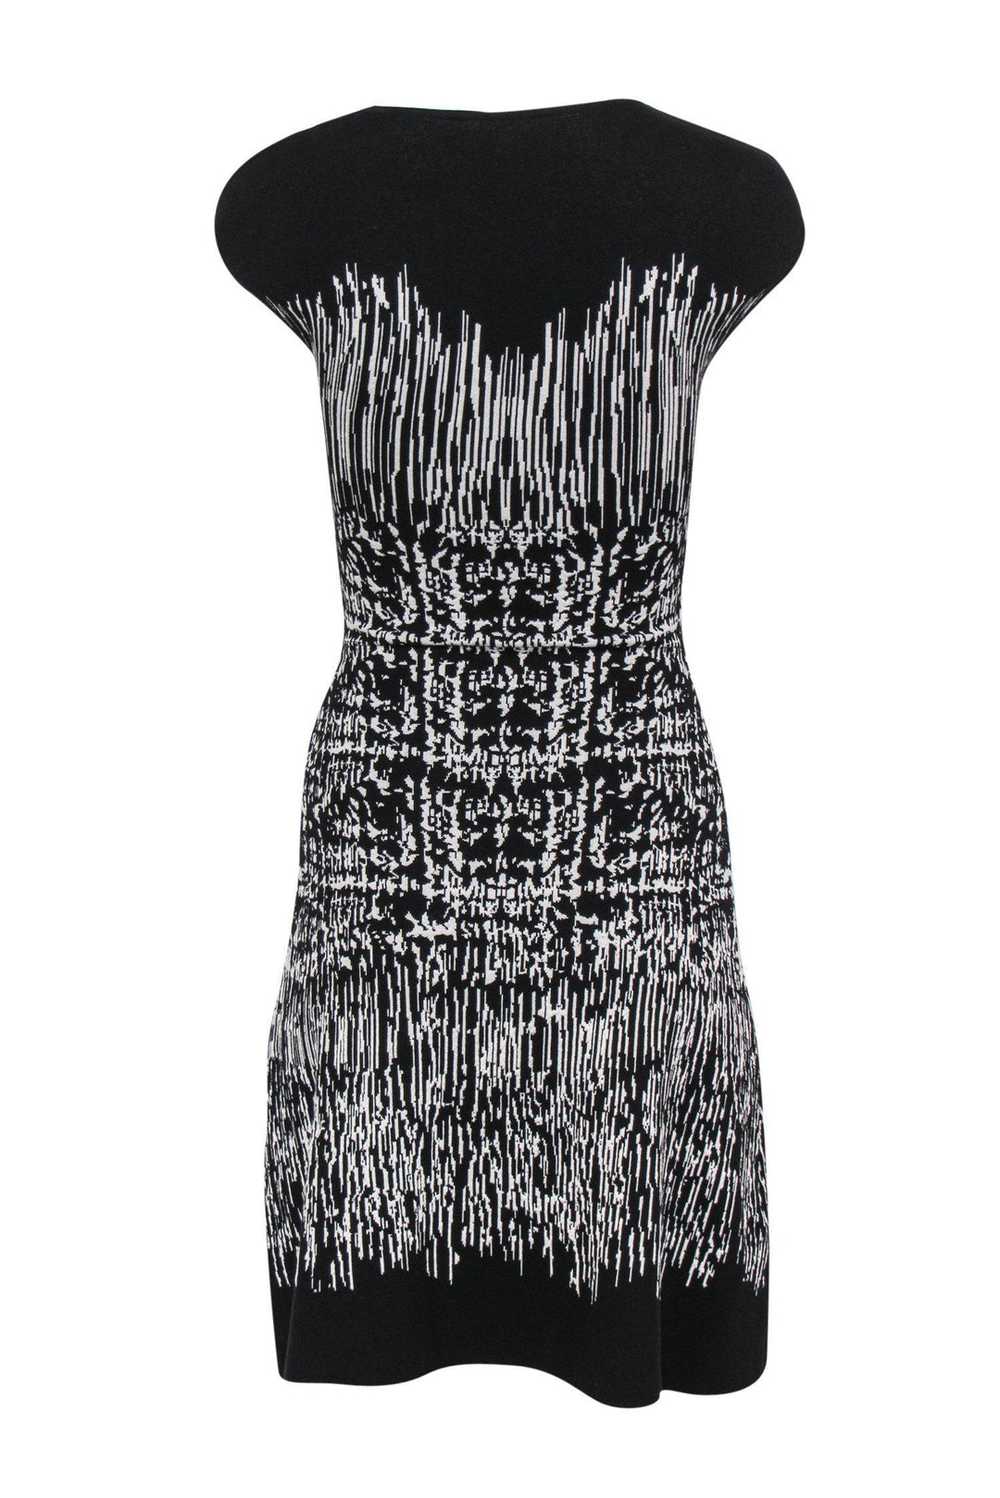 BCBG Max Azria - Black & White Striped Knit Dress… - image 3